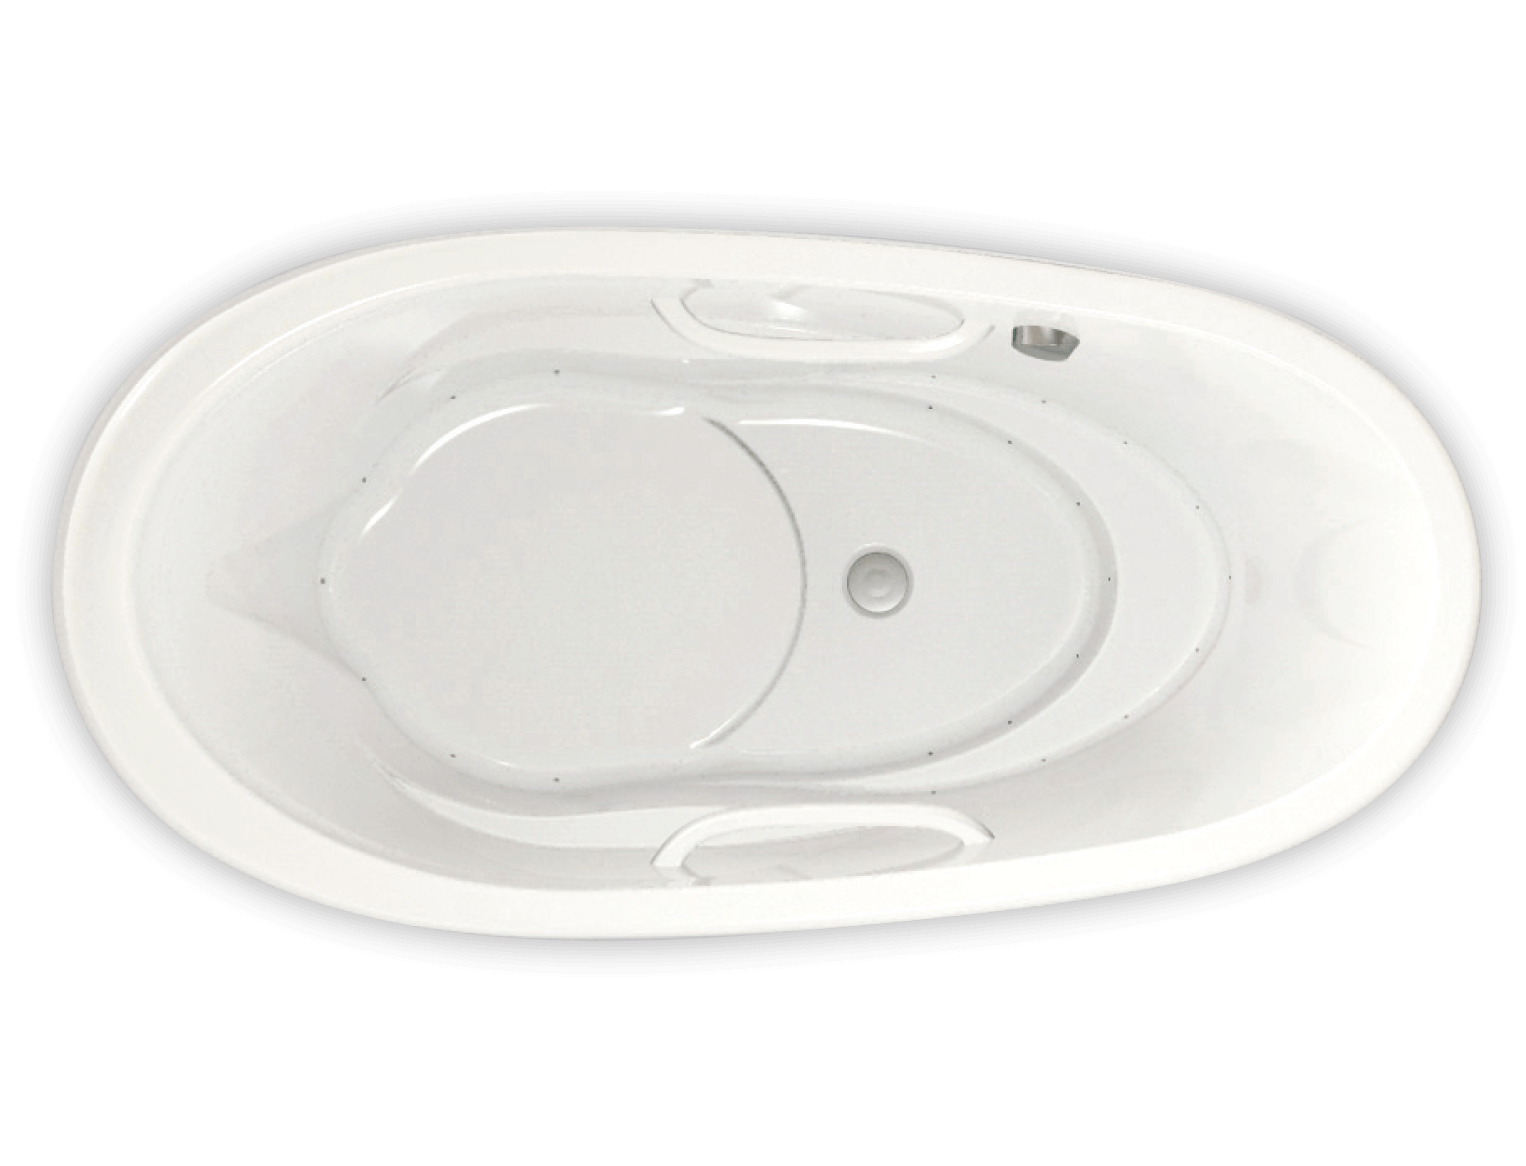 Essencia Oval 7236 air jet bathtub for your modern bathroom